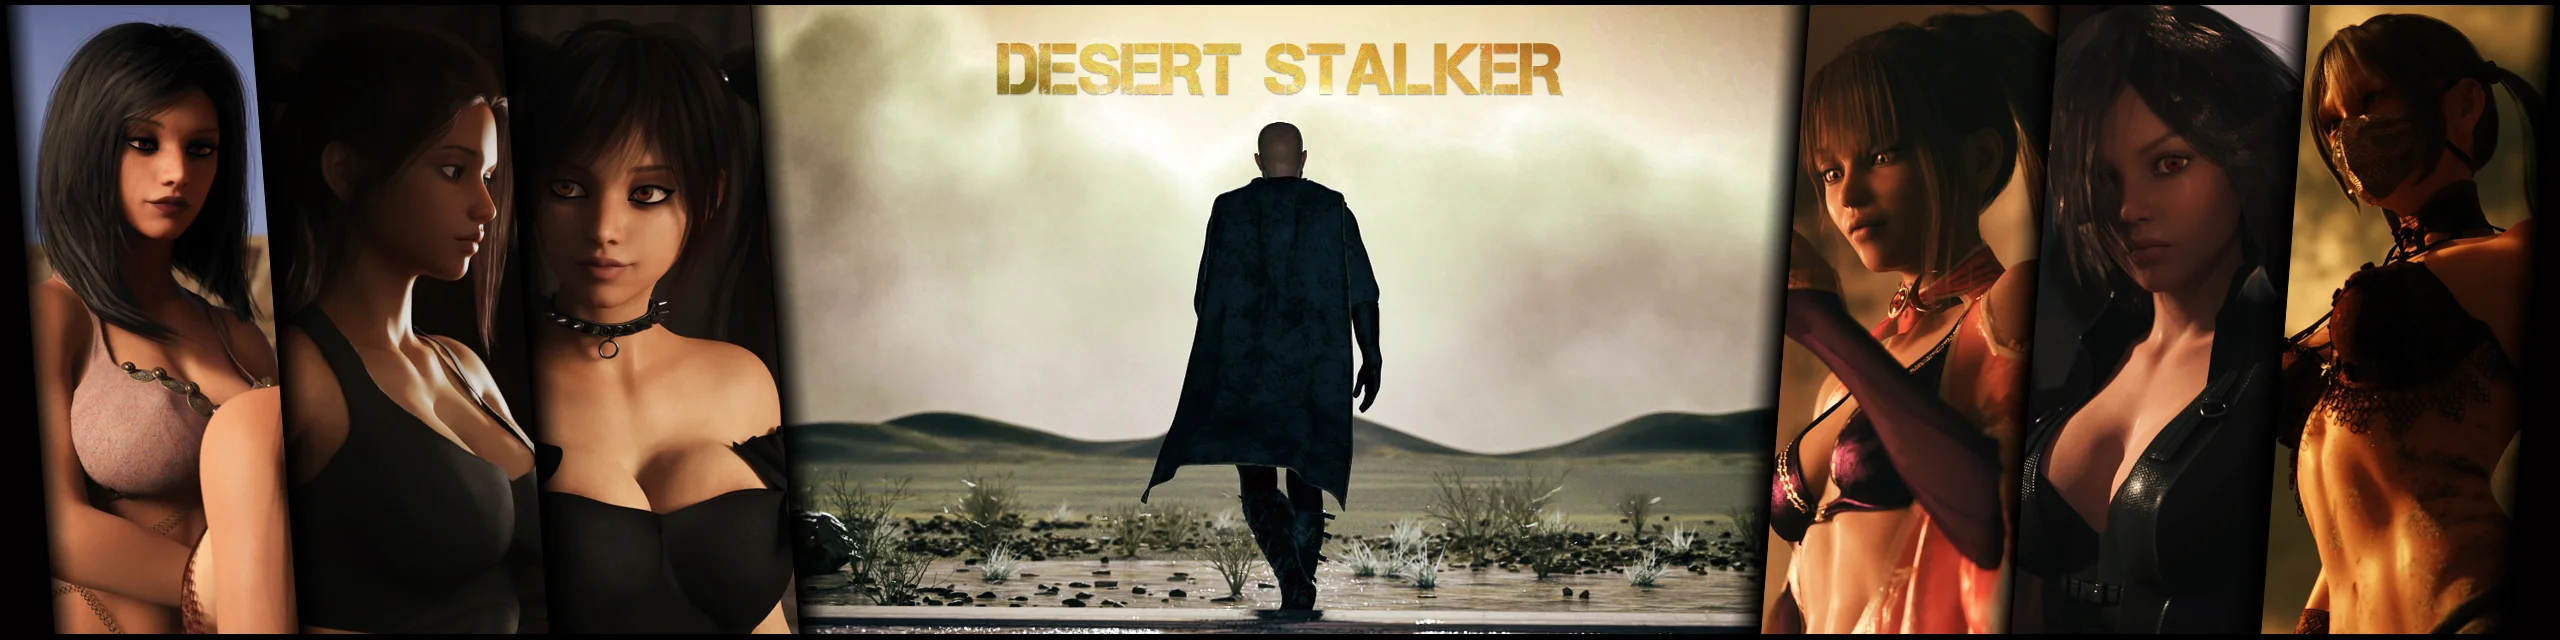 Desert Stalker v.0.15b